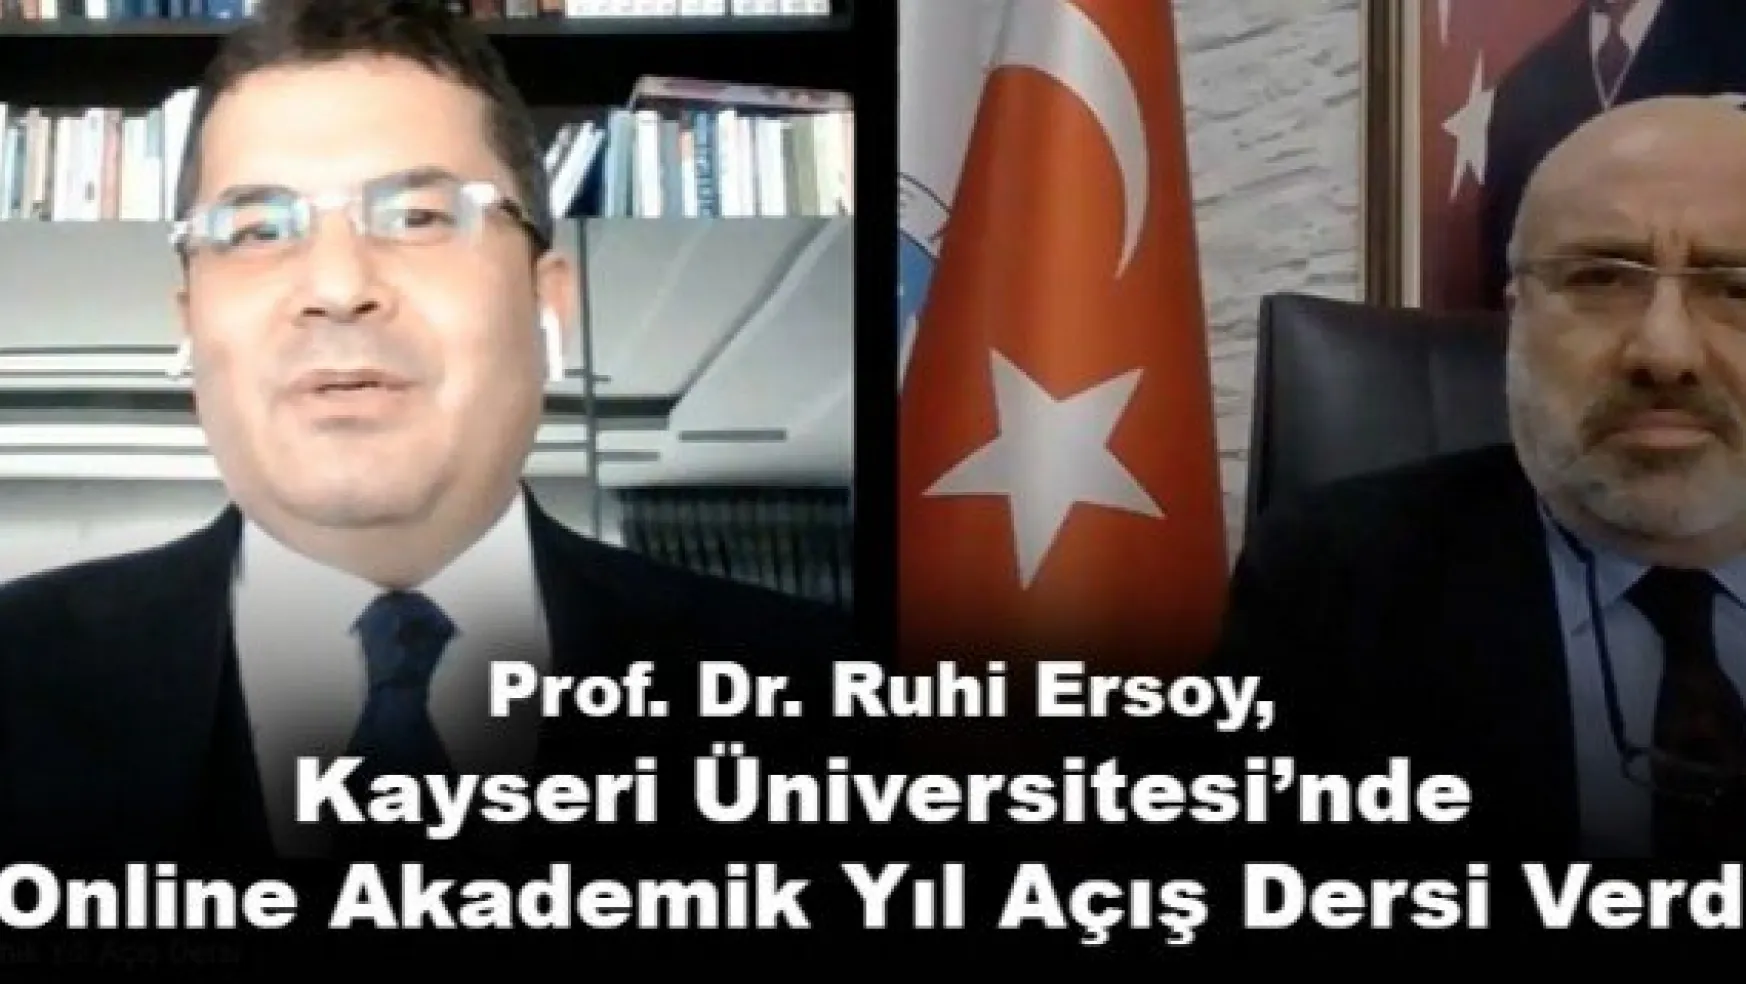 Prof. Dr. Ruhi Ersoy, Kayseri Üniversitesi'nde Online Akademik Yıl Açış Dersi Verdi